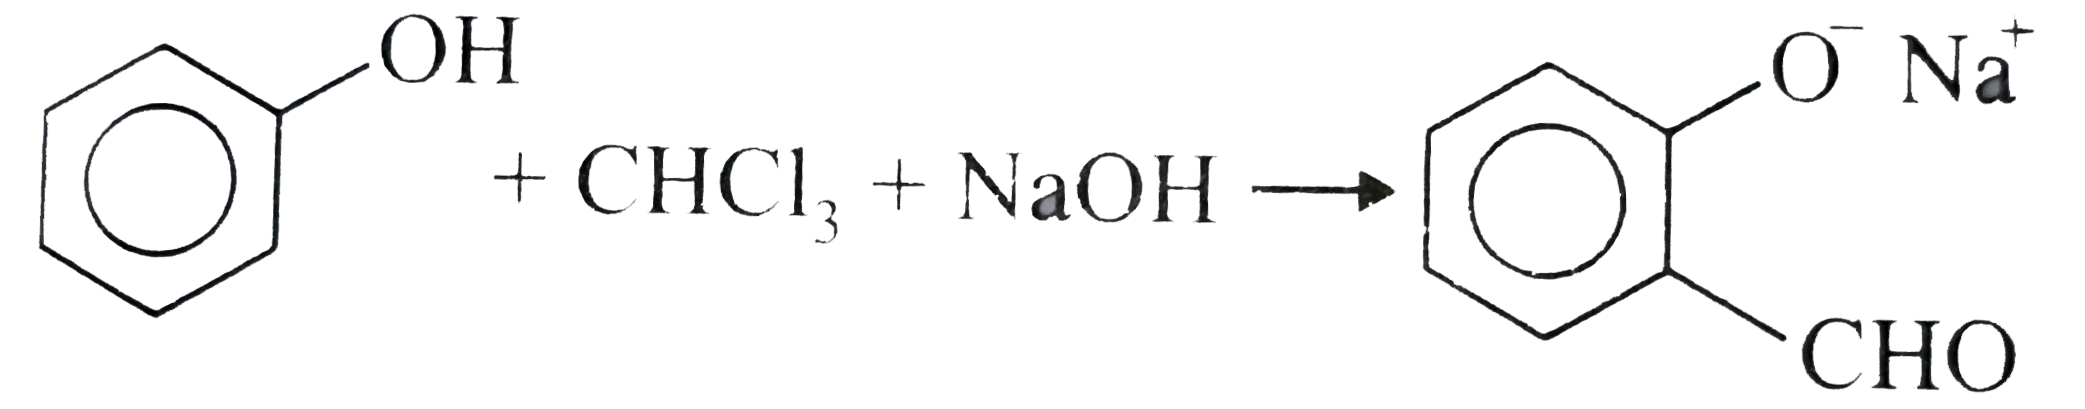 C6h5chcl2 naoh. Стирол реакции. Химические свойства винилбензола. Стирол и бром. Стирол химические свойства.